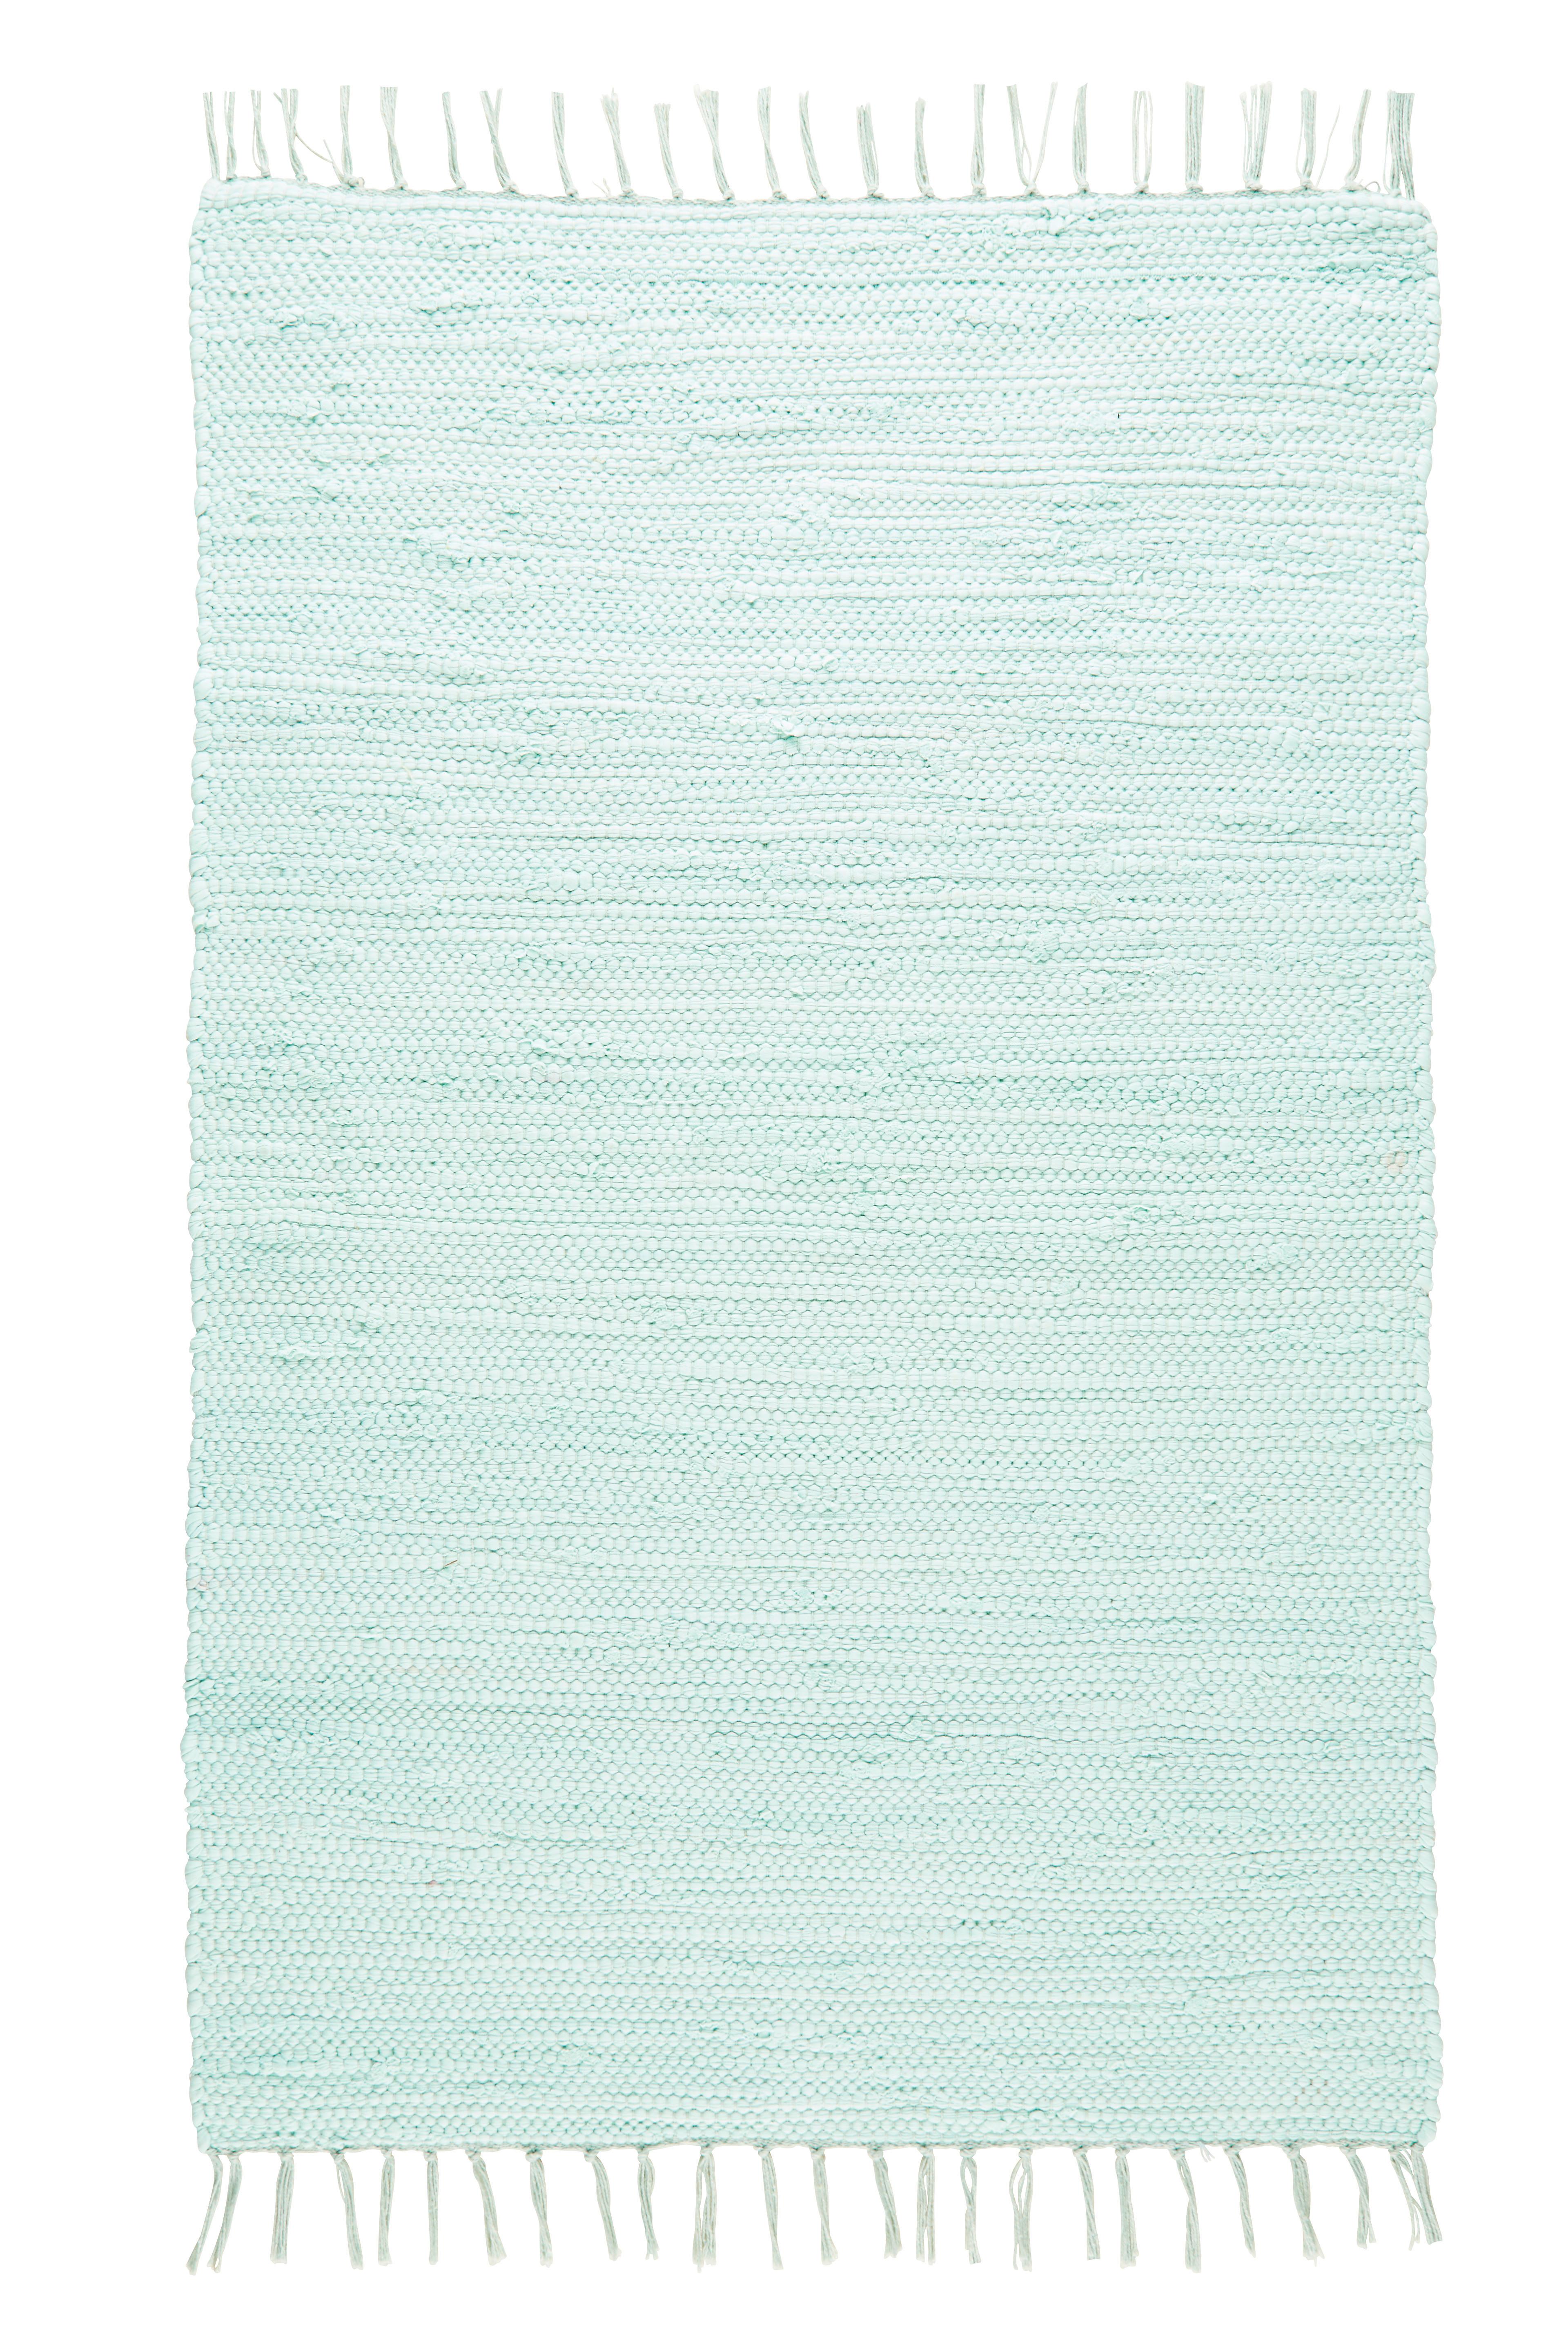 Preproga Iz Krp Julia 3 - svetlo zelena, Romantika, tekstil (70/230cm) - Modern Living